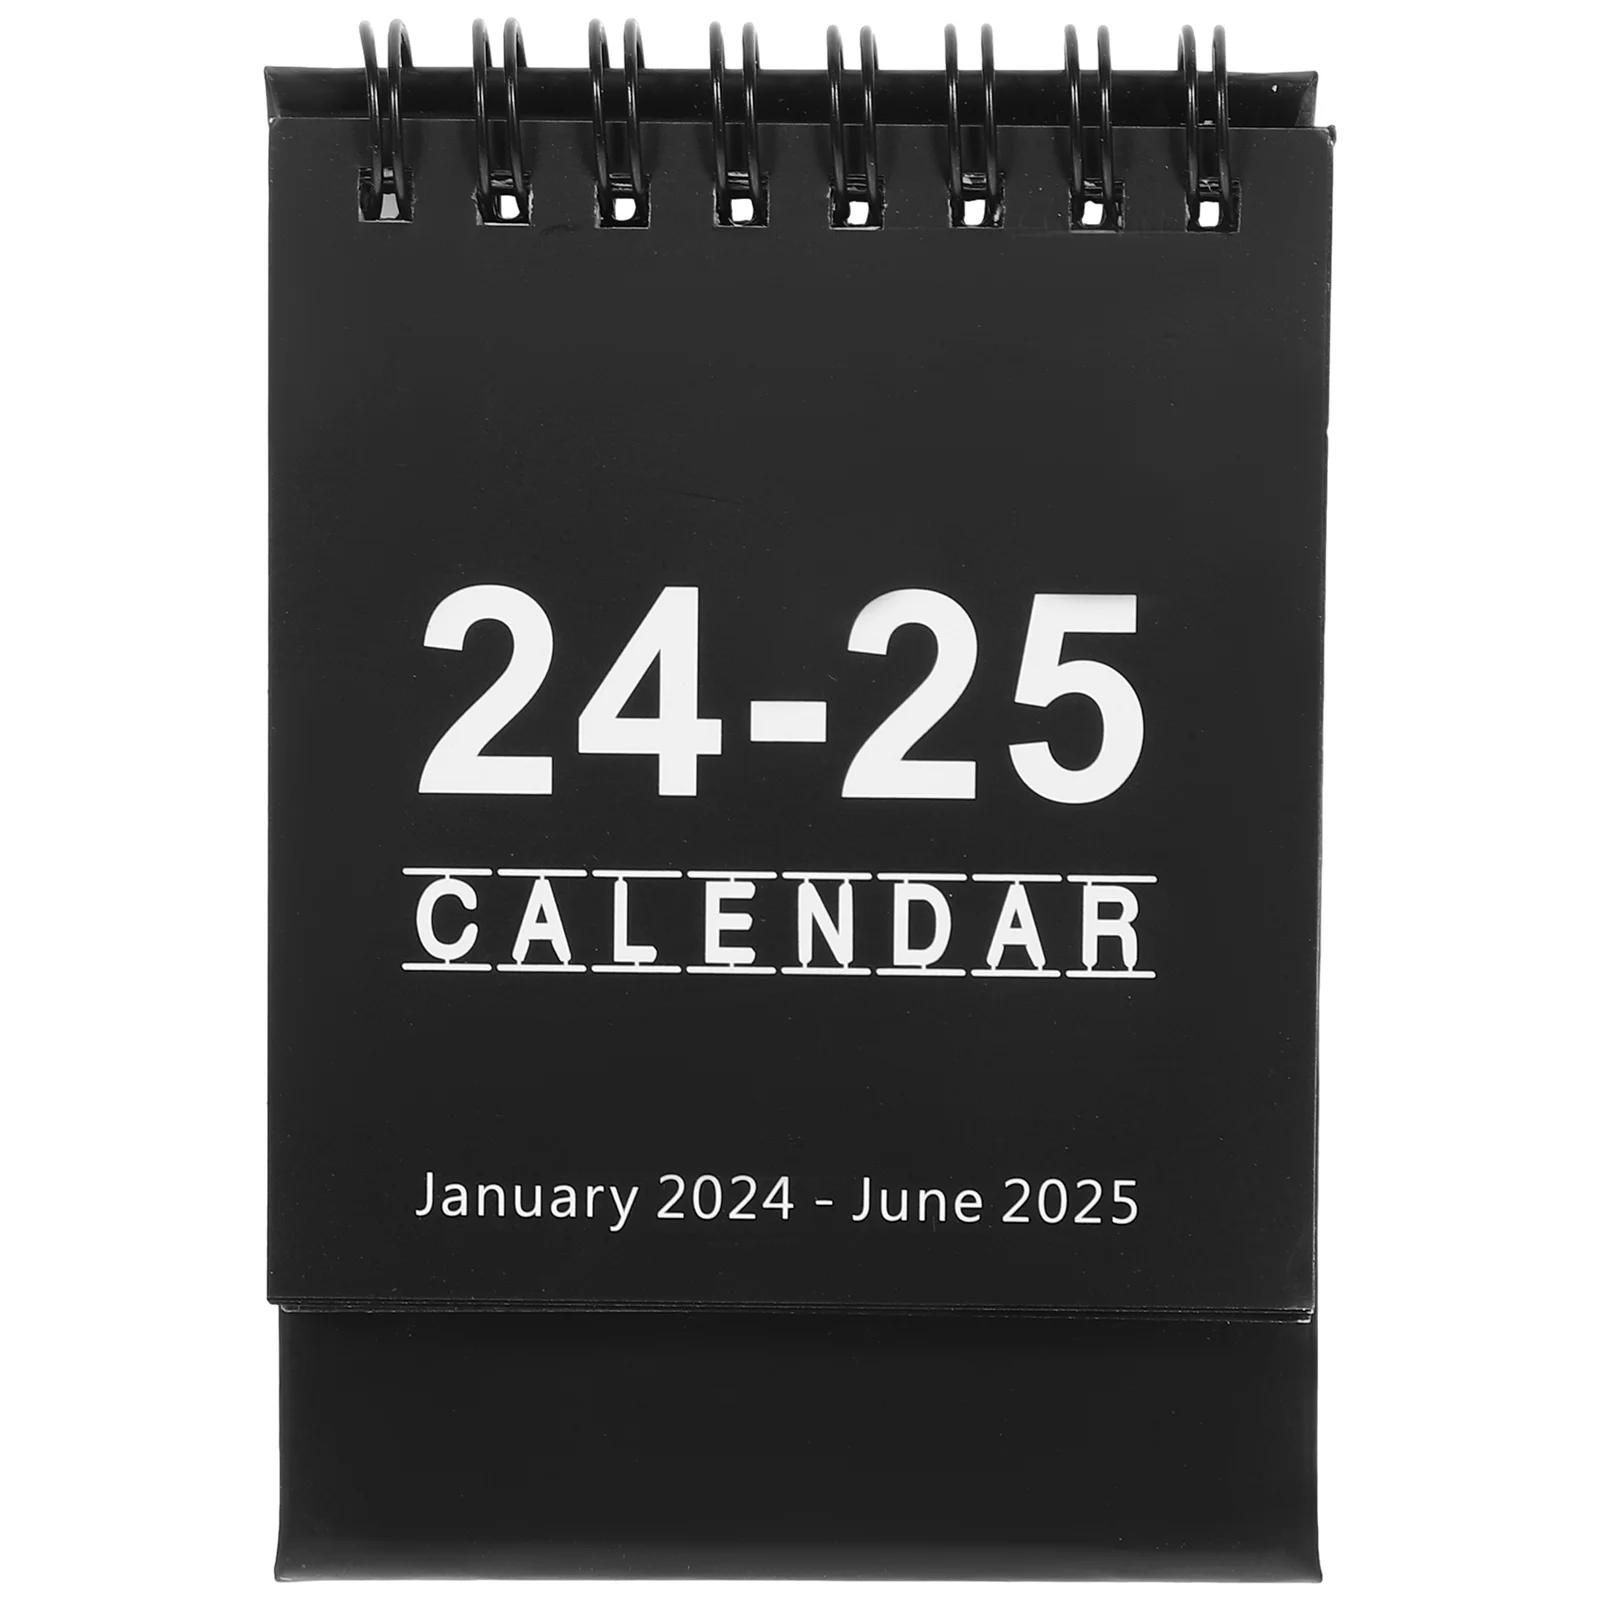 

Table Desk Tabletop 2025 Calendar Home Desk Calendar 2025 Table Calendar Creative Calendar Decor for Desk Home Decor